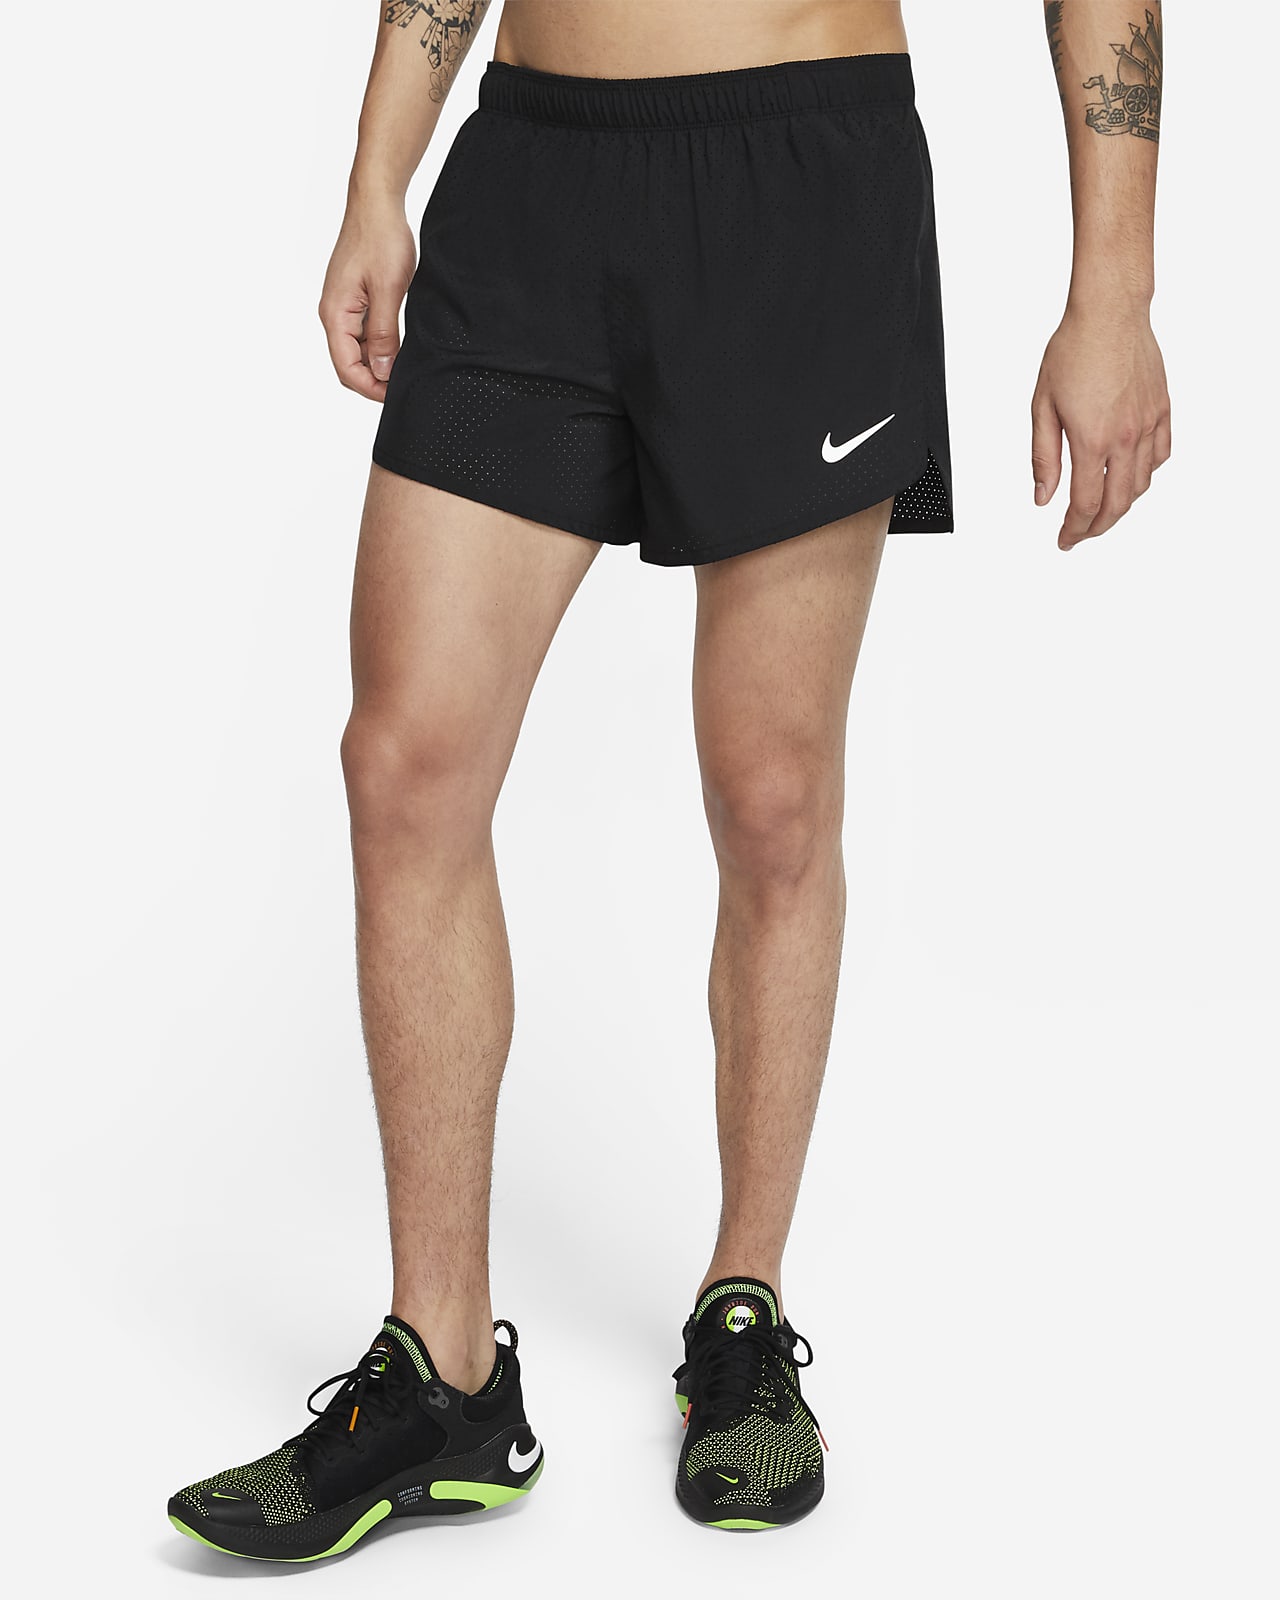 parcialidad primero Comercialización Nike Fast Pantalón corto de competición de 10 cm con forro - Hombre. Nike ES